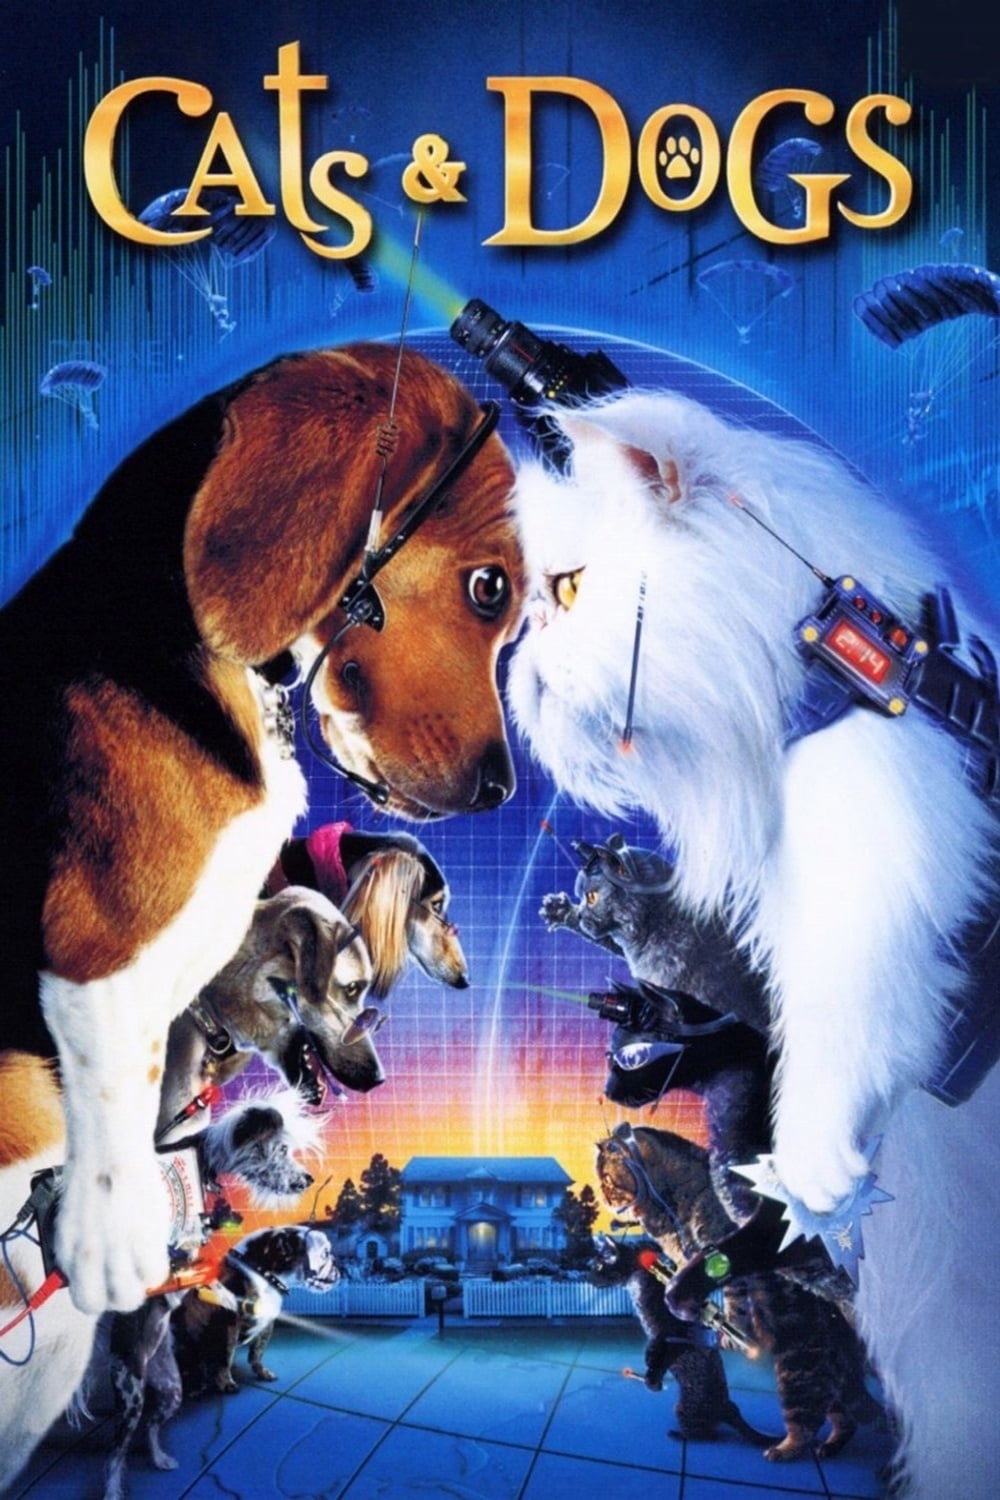 Comme chiens et chats (2001)